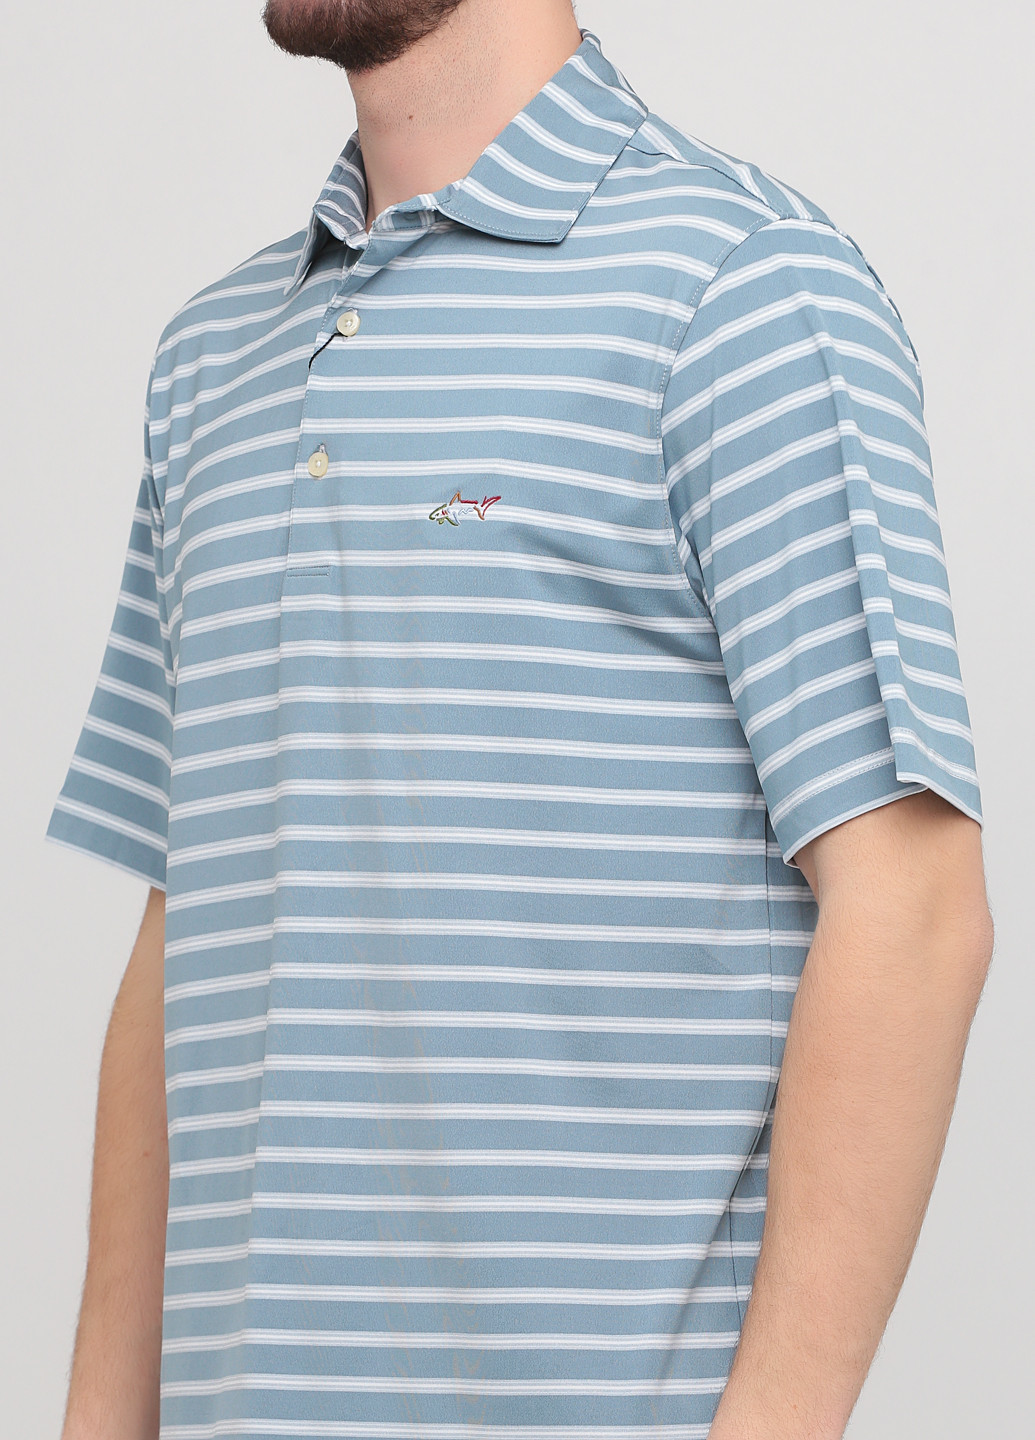 Светло-серая футболка-поло для мужчин Greg Norman в полоску